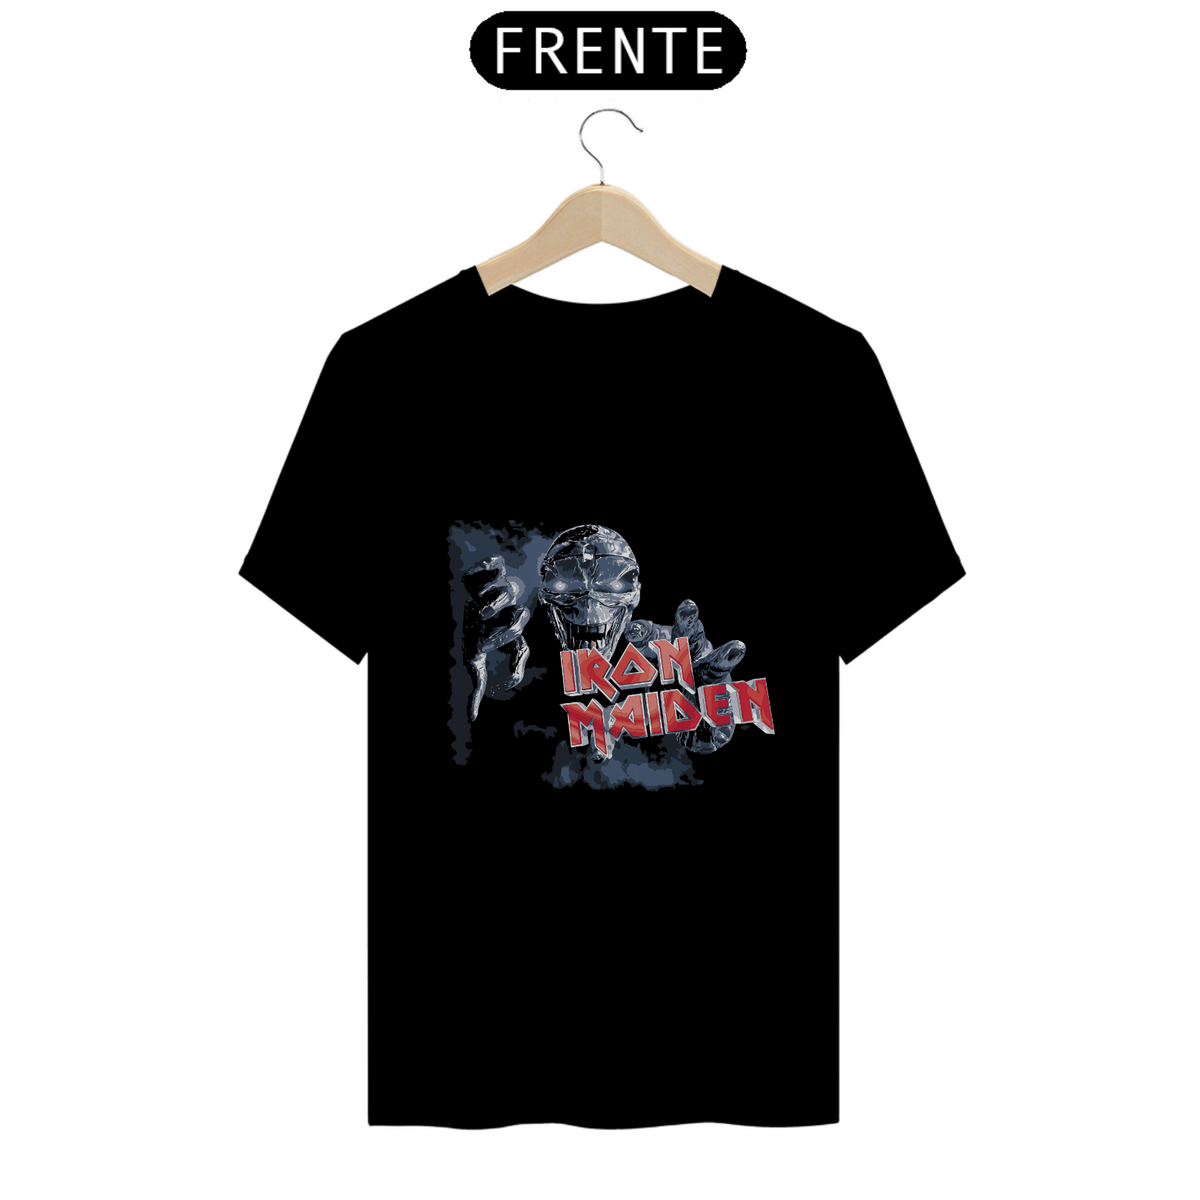 Nome do produto: Camiseta Iron Maiden